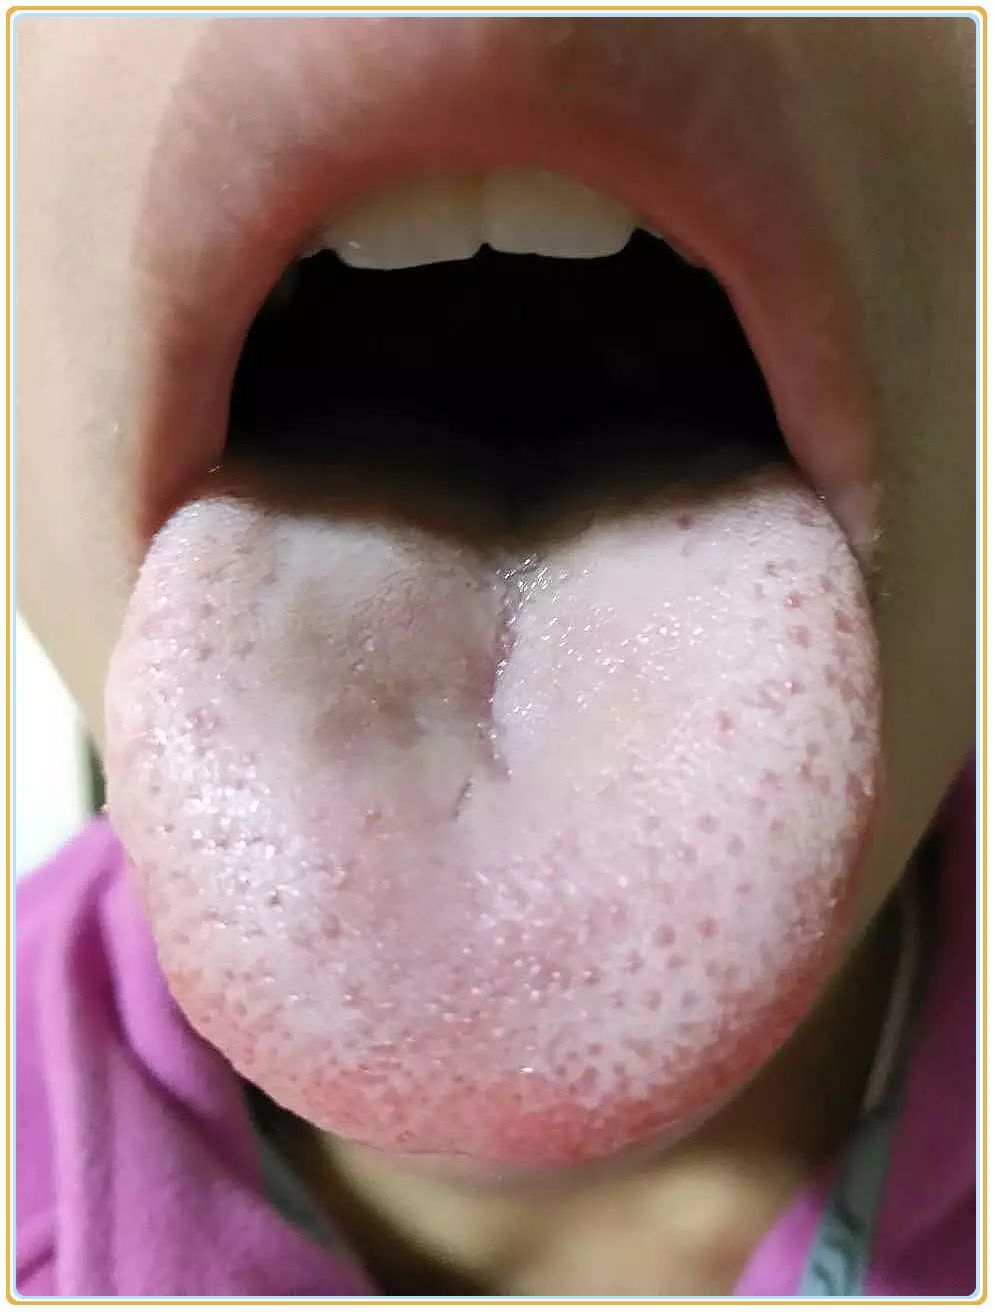 舌像解析|孩子舌苔满布舌体,中间厚,这是湿气与积食混杂的状态啊!